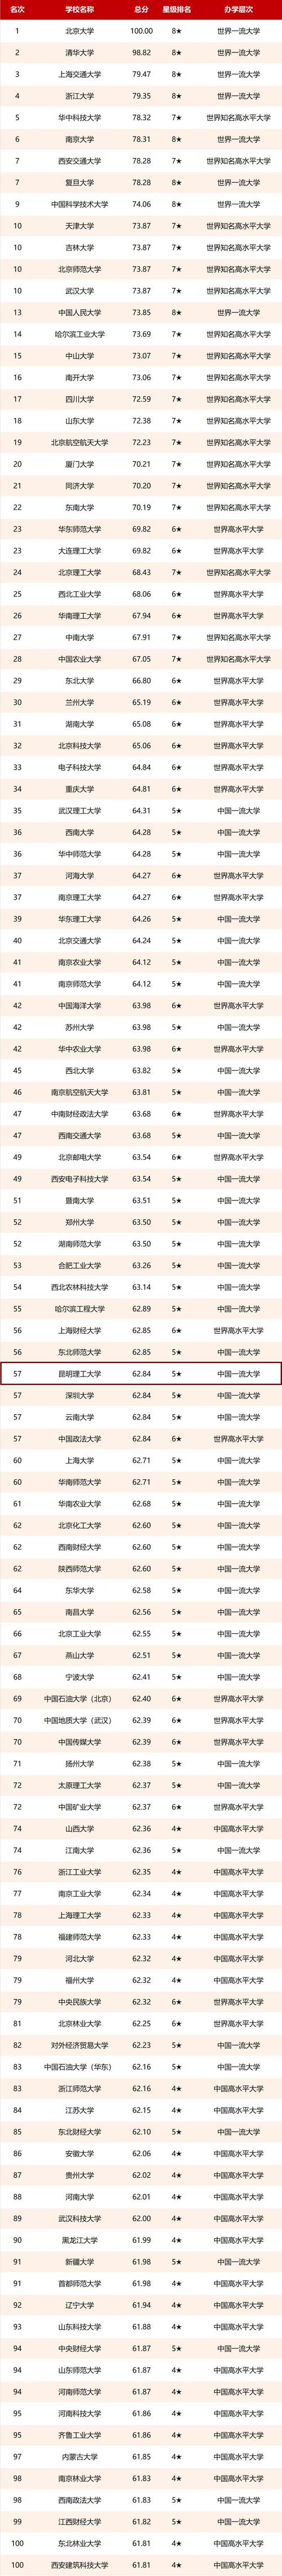 2021校友会中国大学排名发布昆明理工大学位列第57位